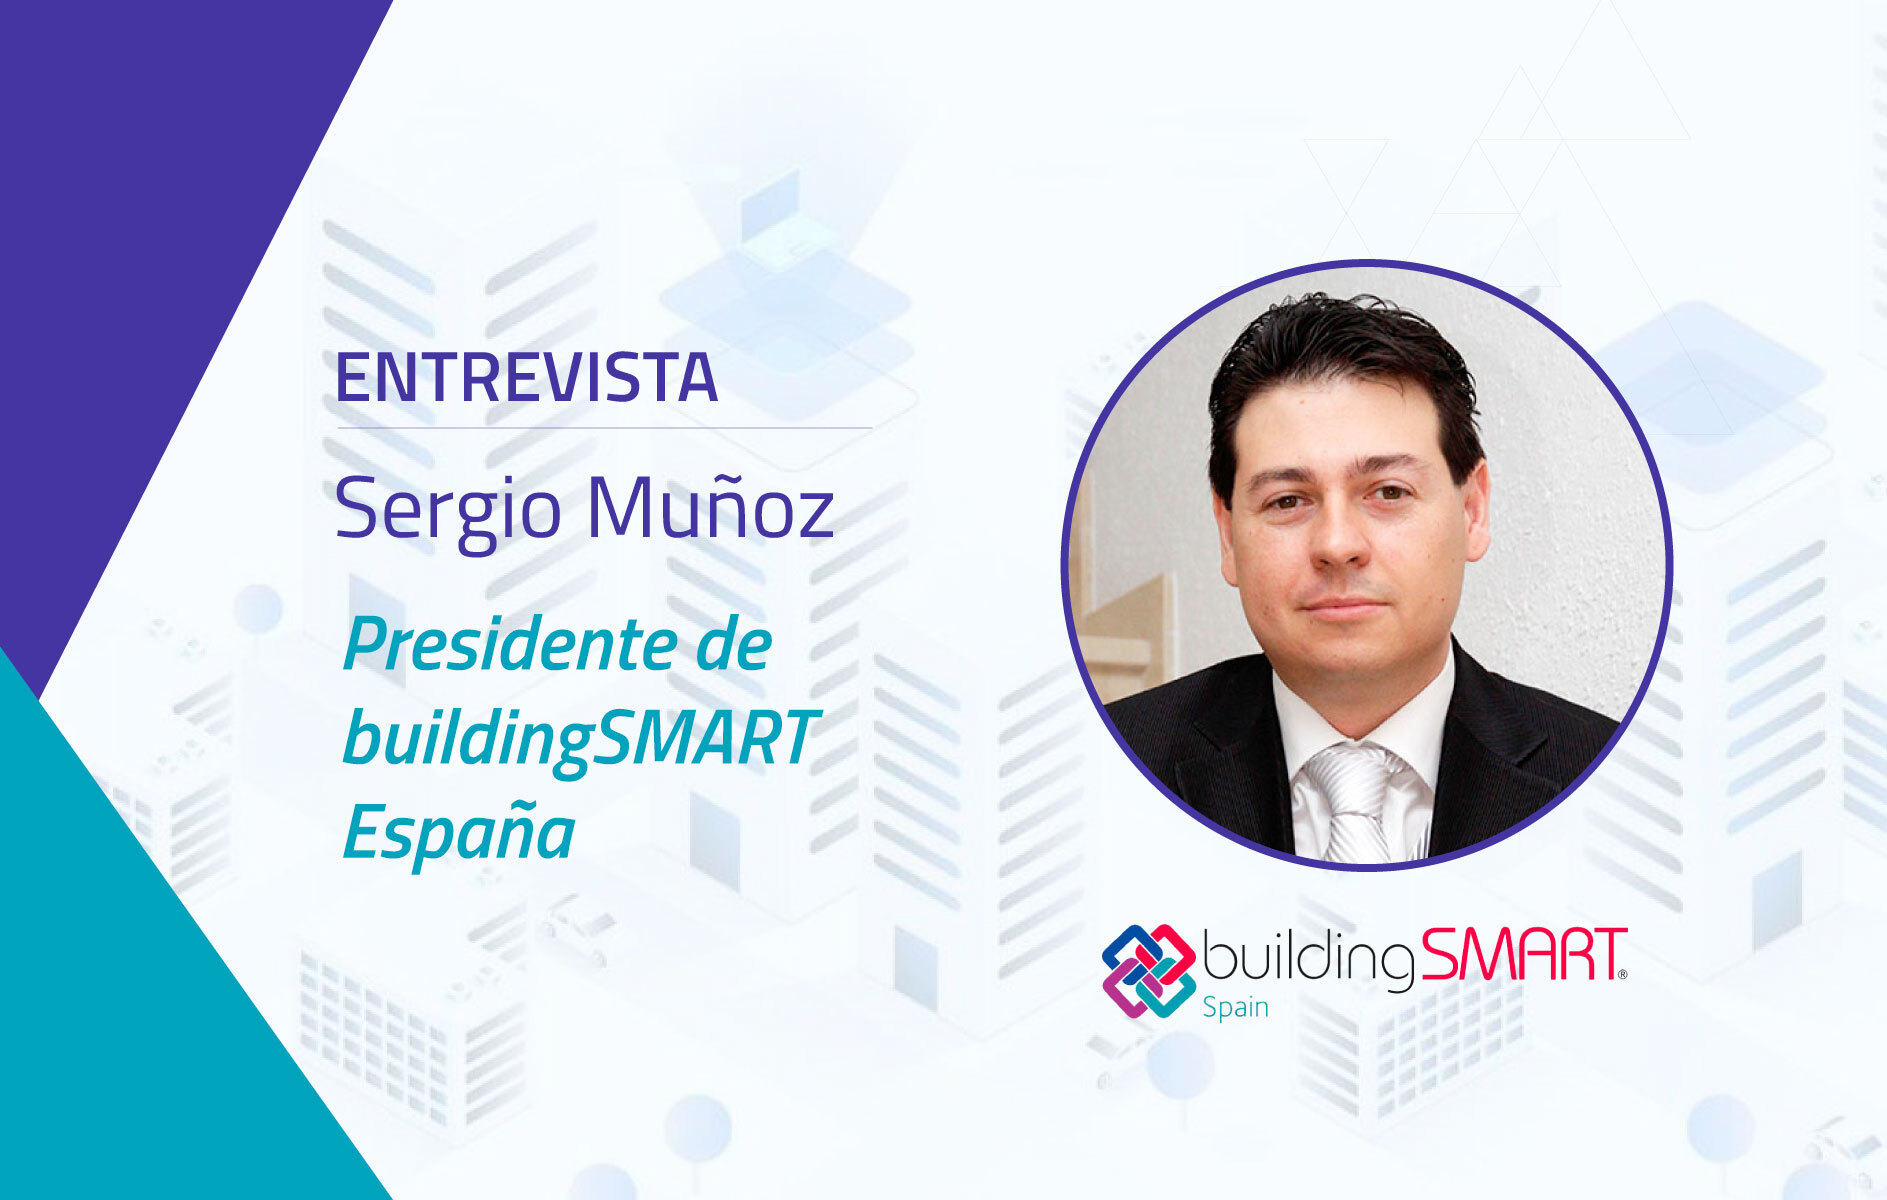 Entrevista al Presidente de buildingSMART España Sergio Muñoz